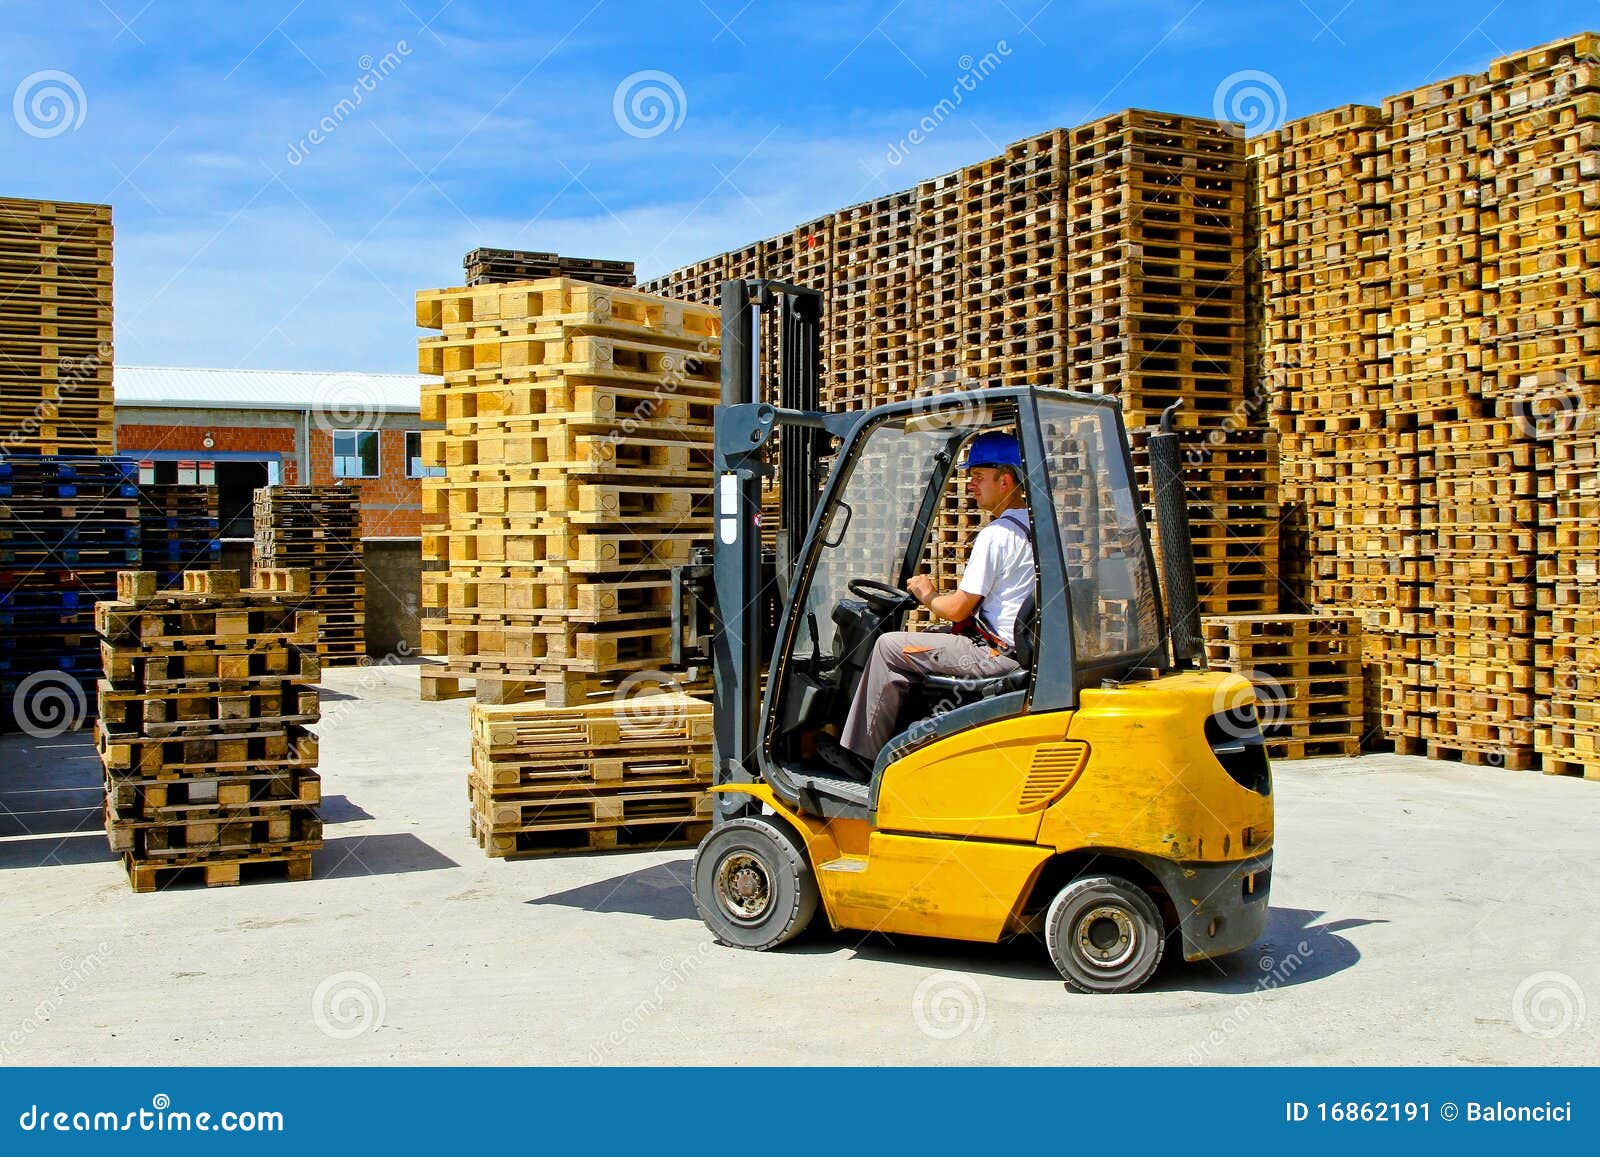 Forklift Pallet Stock Image Image Of Transport Warehouse 16862191